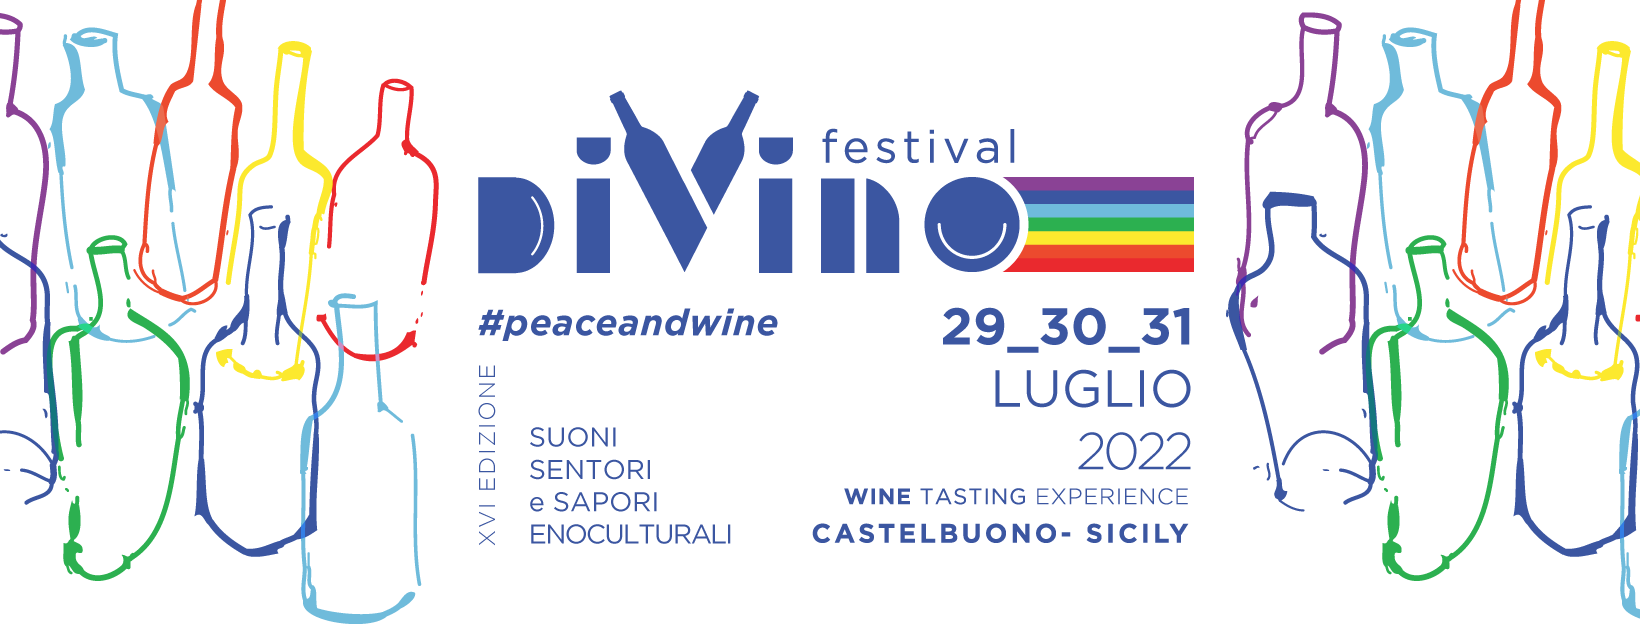 Divino Festival 2022